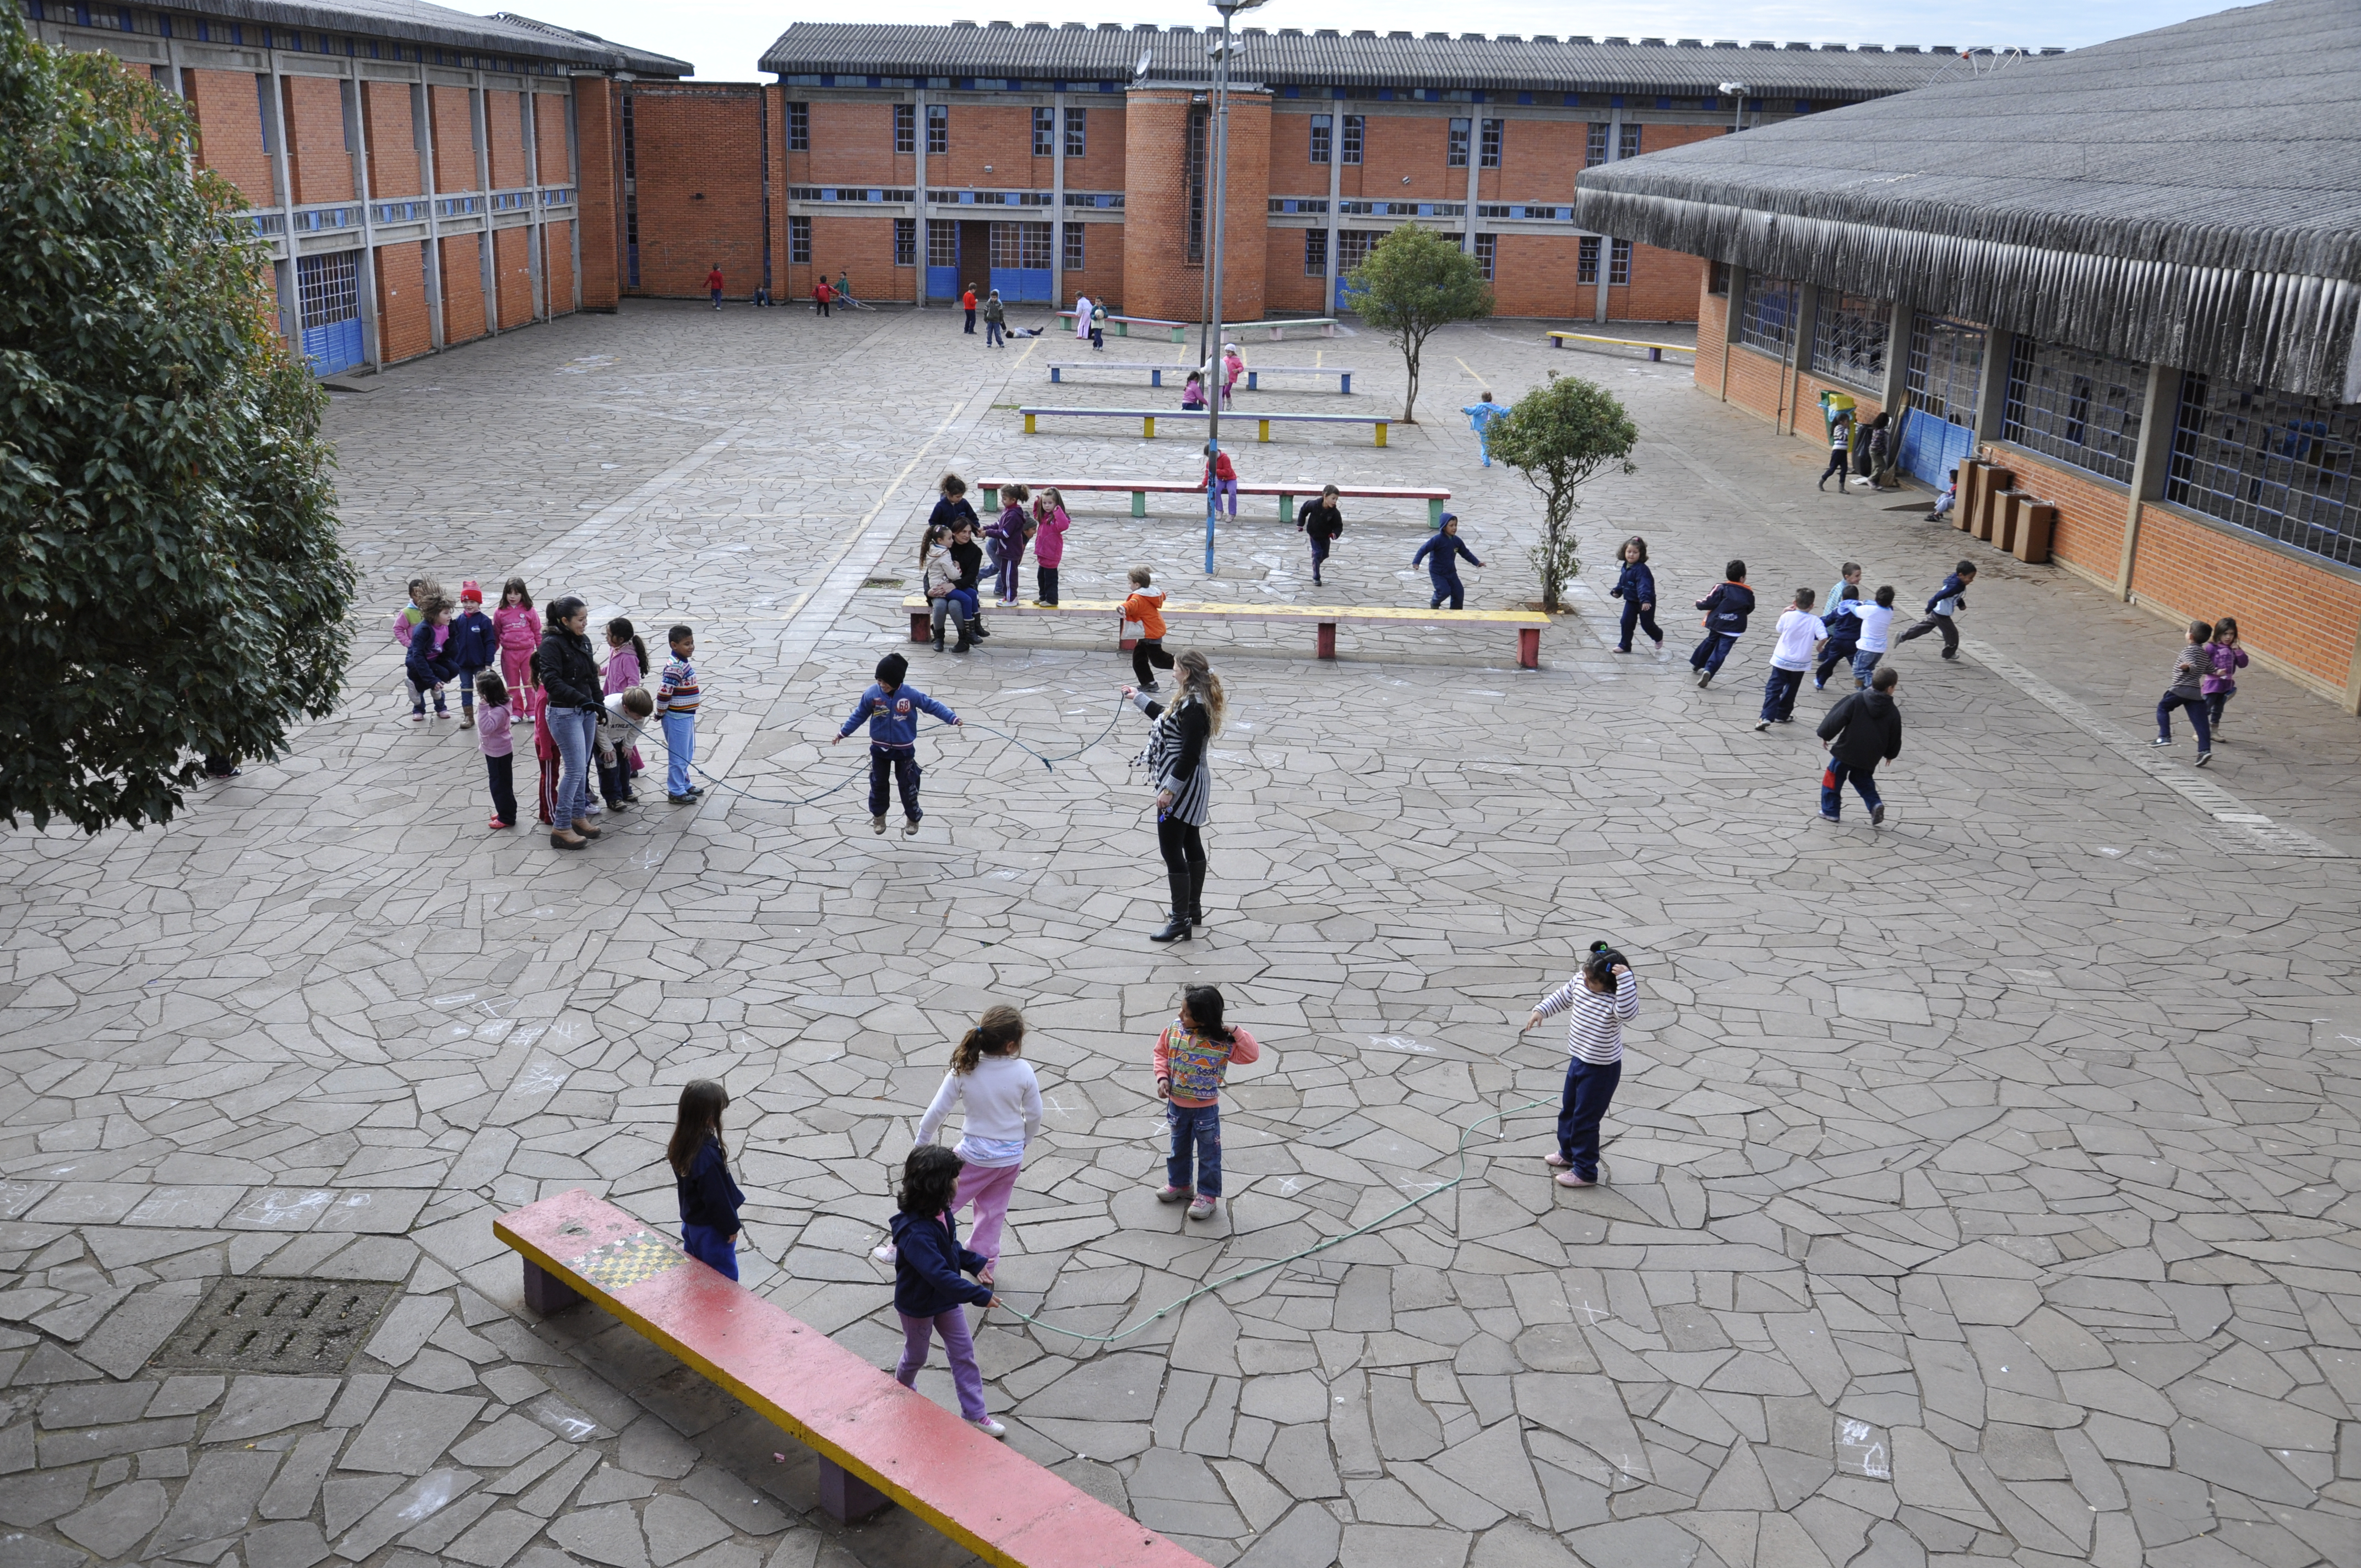 Em pátio amplo escolar, crianças brincam de pular corda e pega-pega divididas em grupos. O dia está nublado e no espaço há bancos compridos e coloridos.